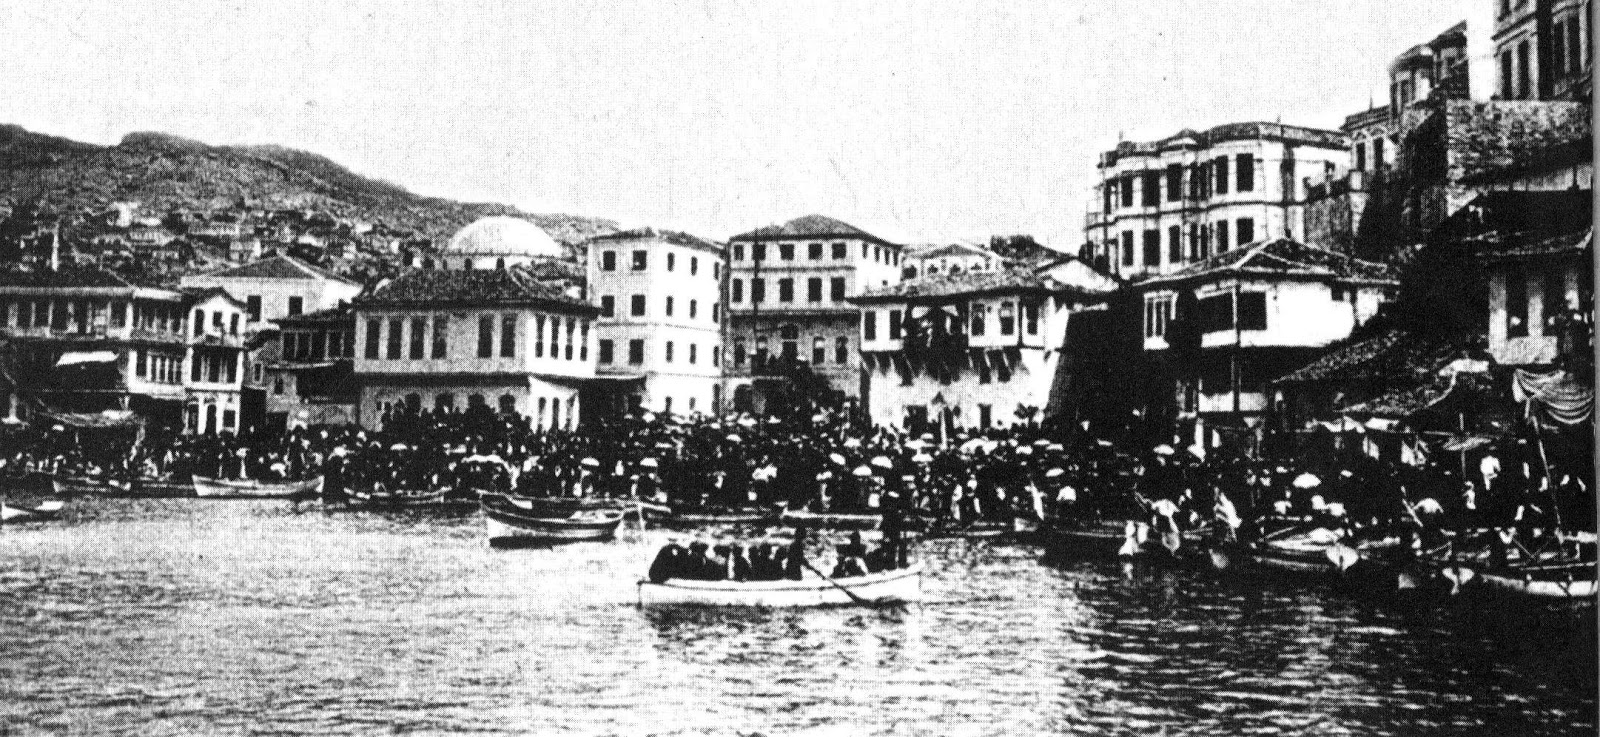 Δήμος Καβάλας: Tίμησε την 106η επέτειο απελευθέρωσης της πόλης από τα βουλγαρικά στρατεύματα κατοχής!